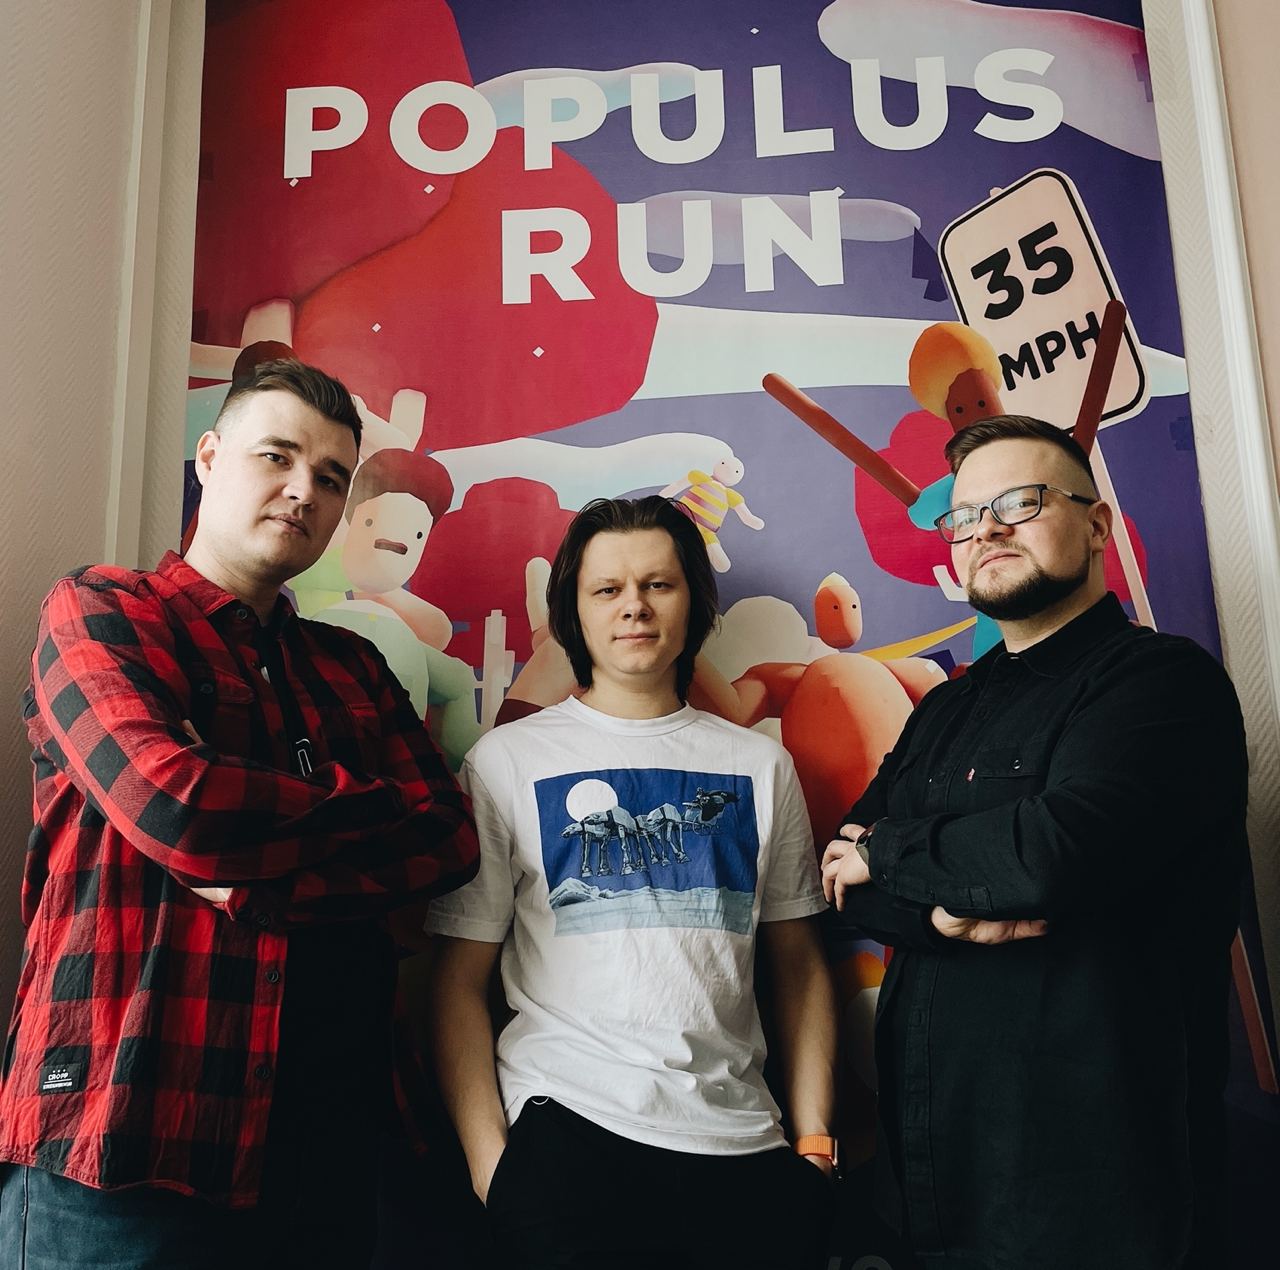 В Apple Arcade появился раннер Populus Run от разработчиков из Нижнего Новгорода